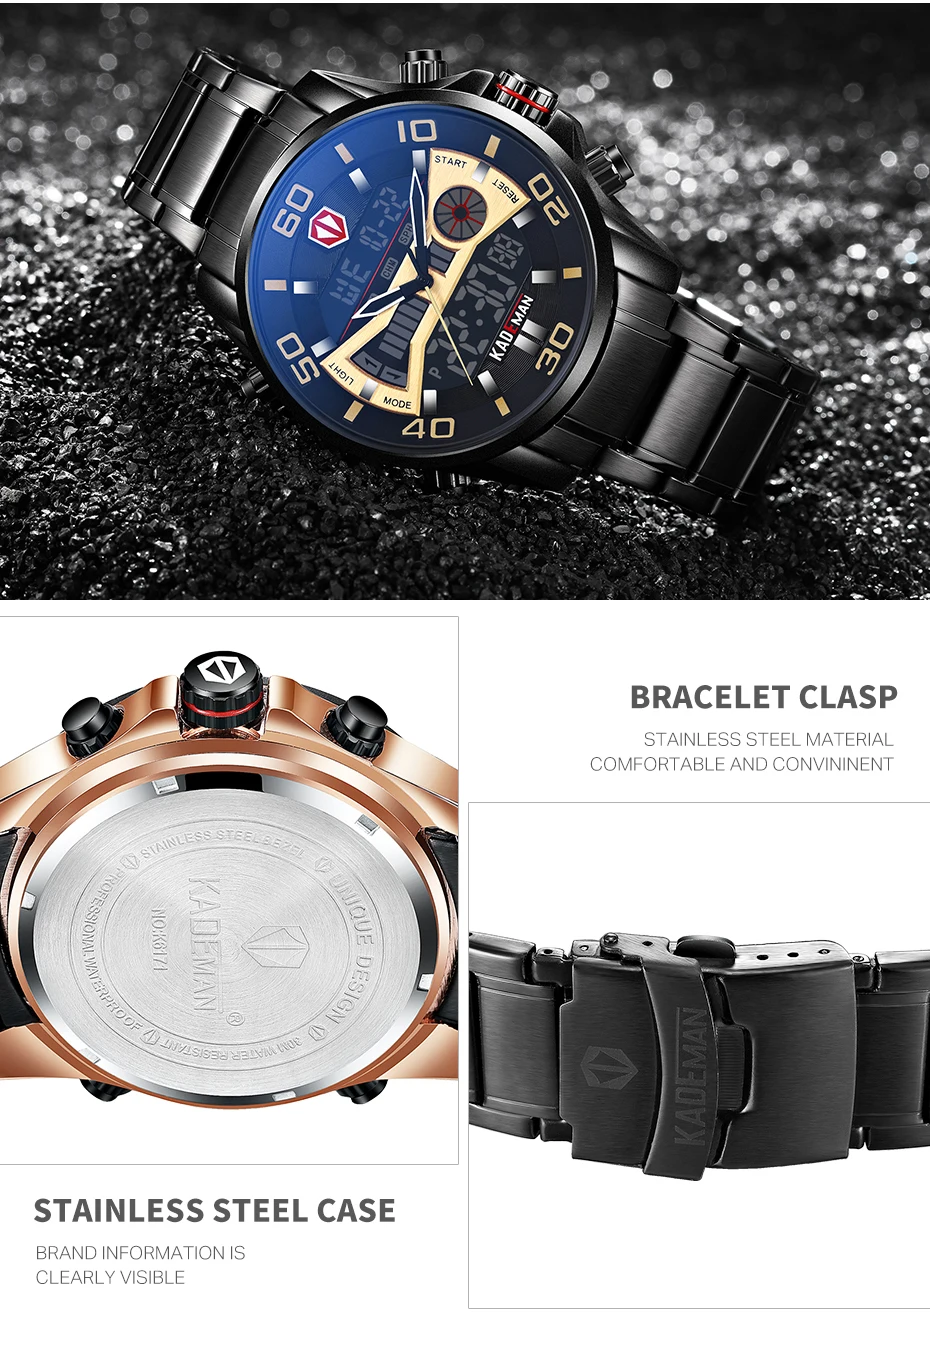 Повседневные спортивные мужские часы новые роскошные полностью стальные водонепроницаемые светодиодный цифровые часы Топ бренд двойной дисплей Автоматические наручные часы с датой